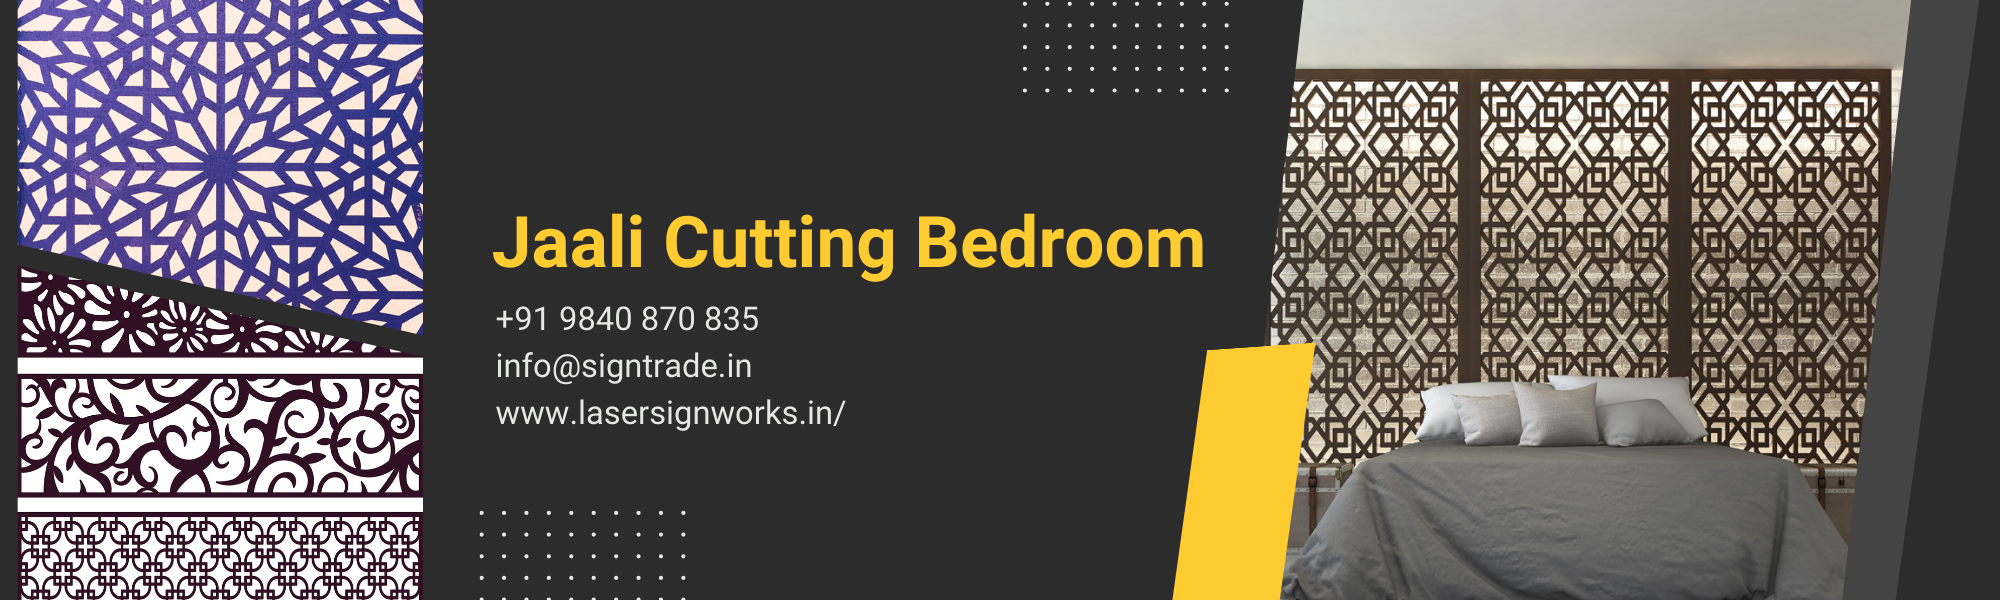 Jaali Cutting Bedroom